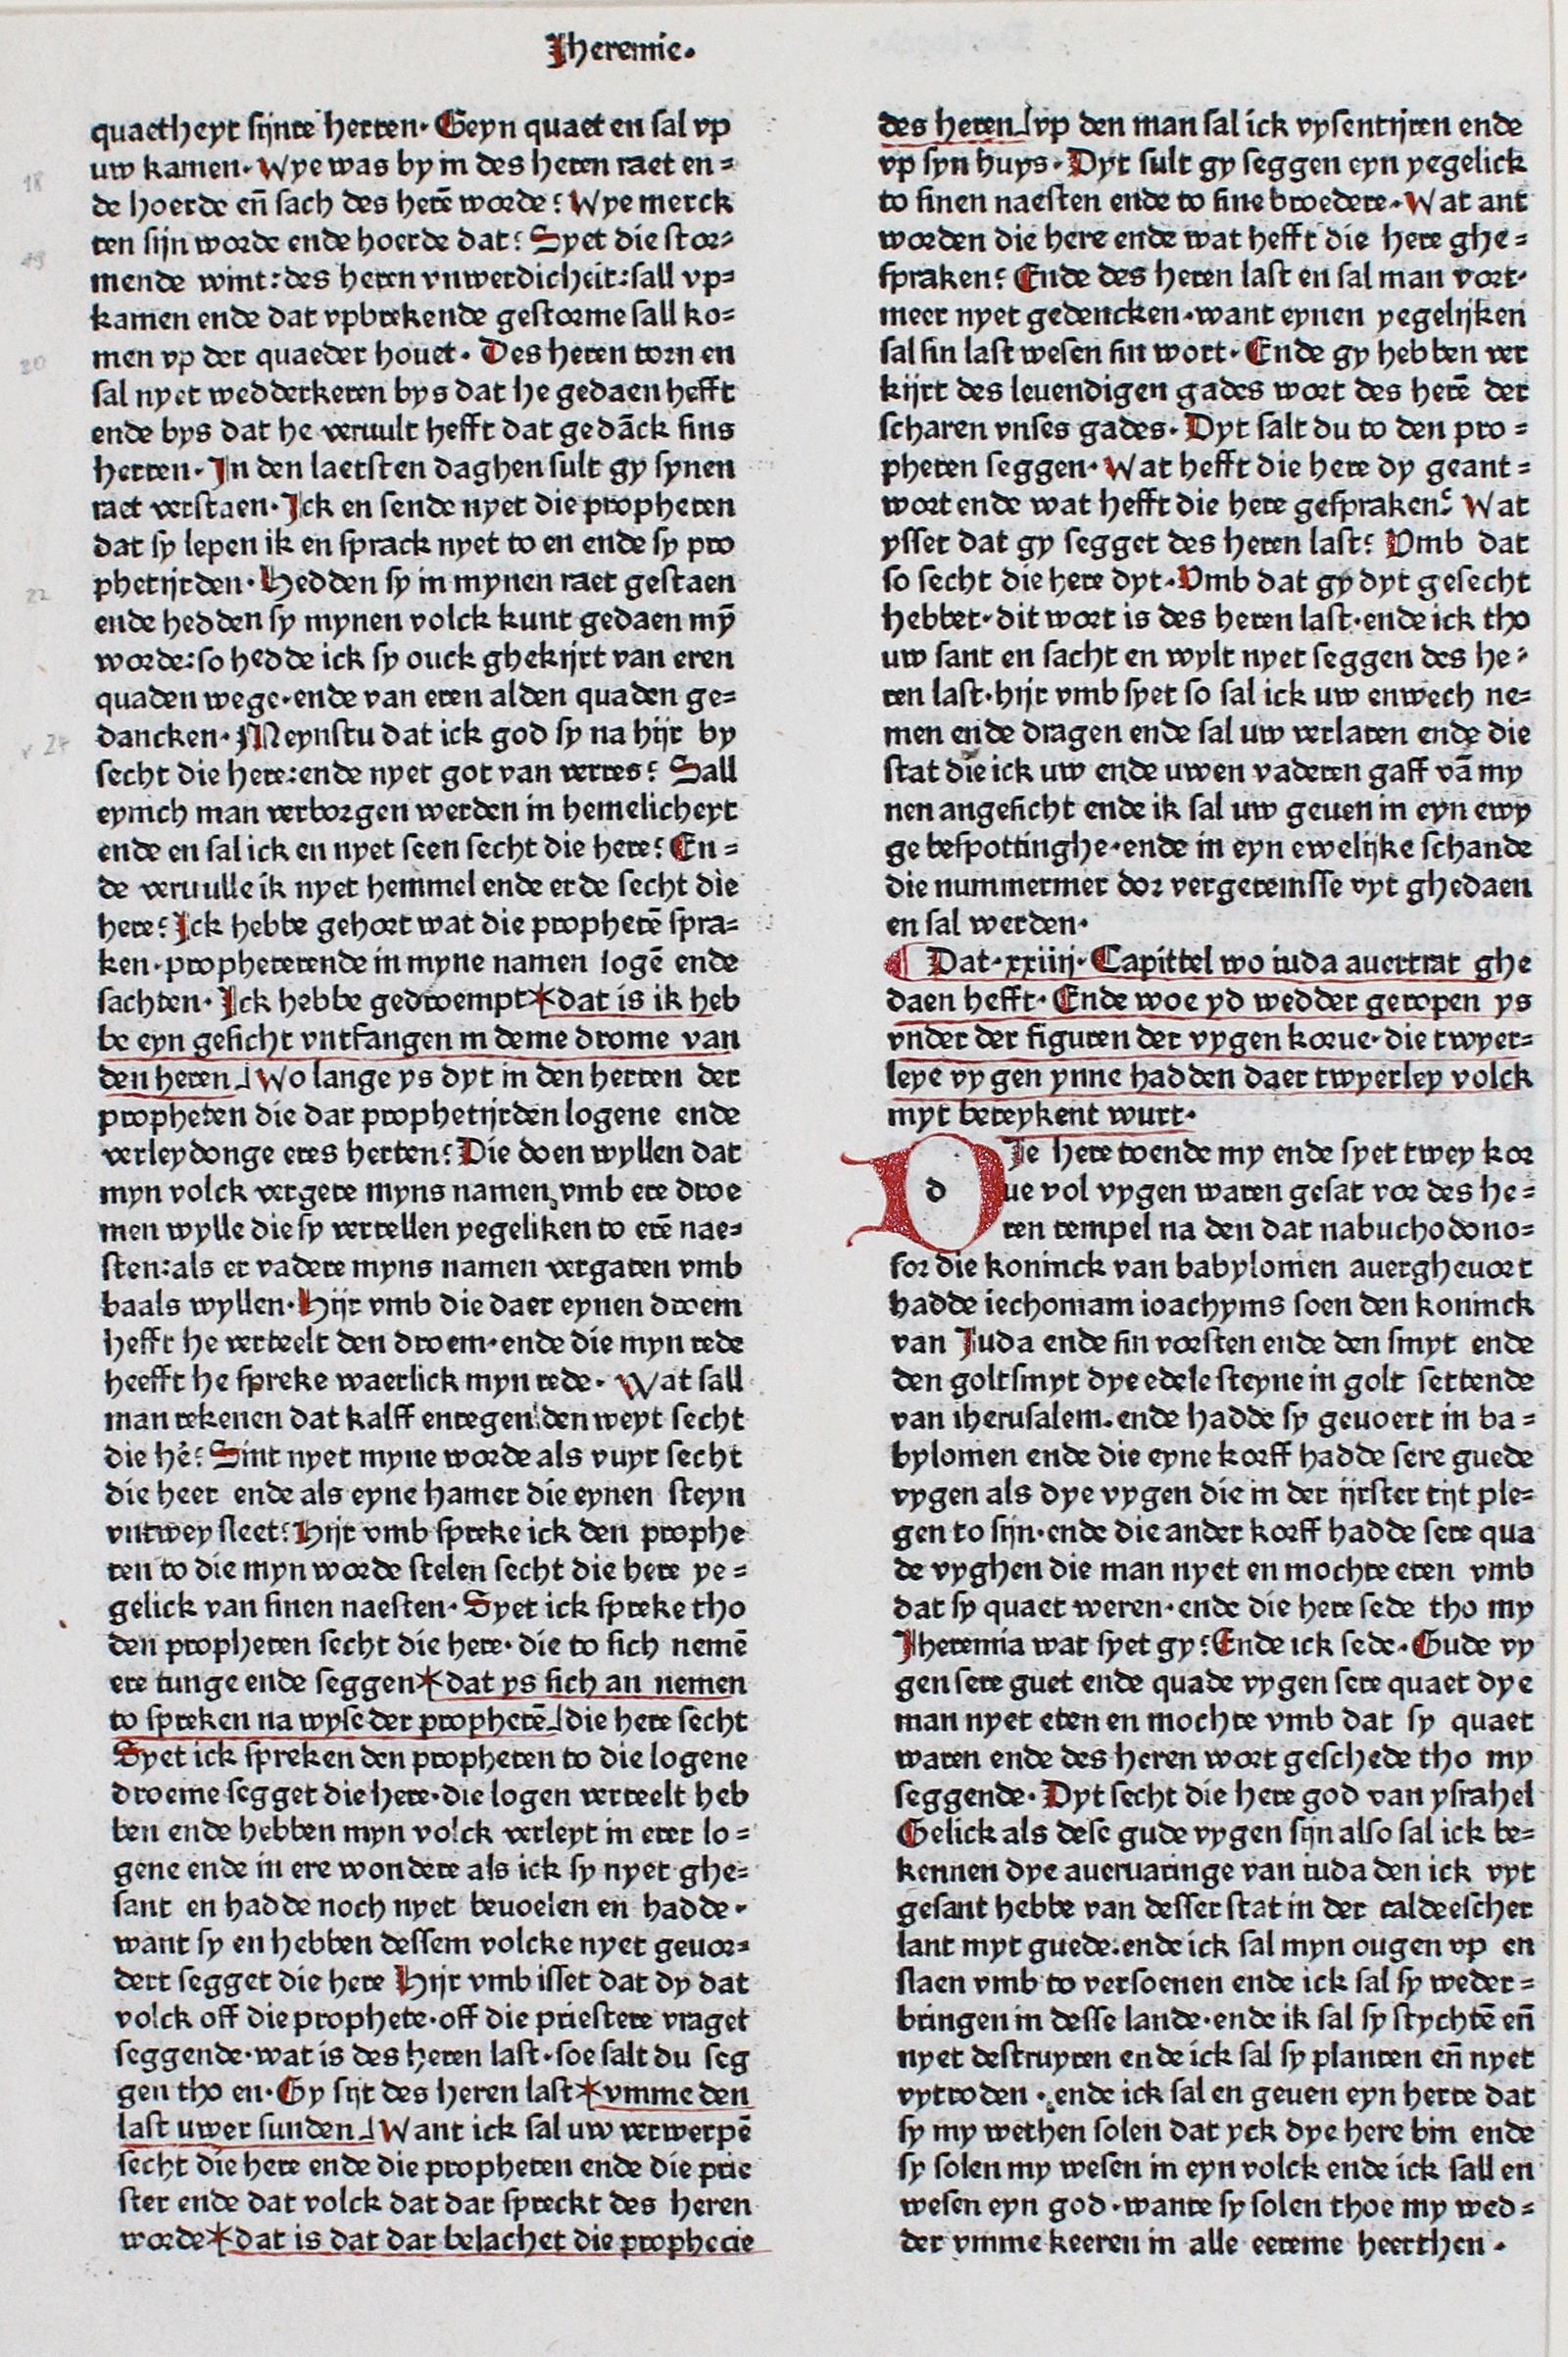 Biblia germanica. | Bild Nr.1